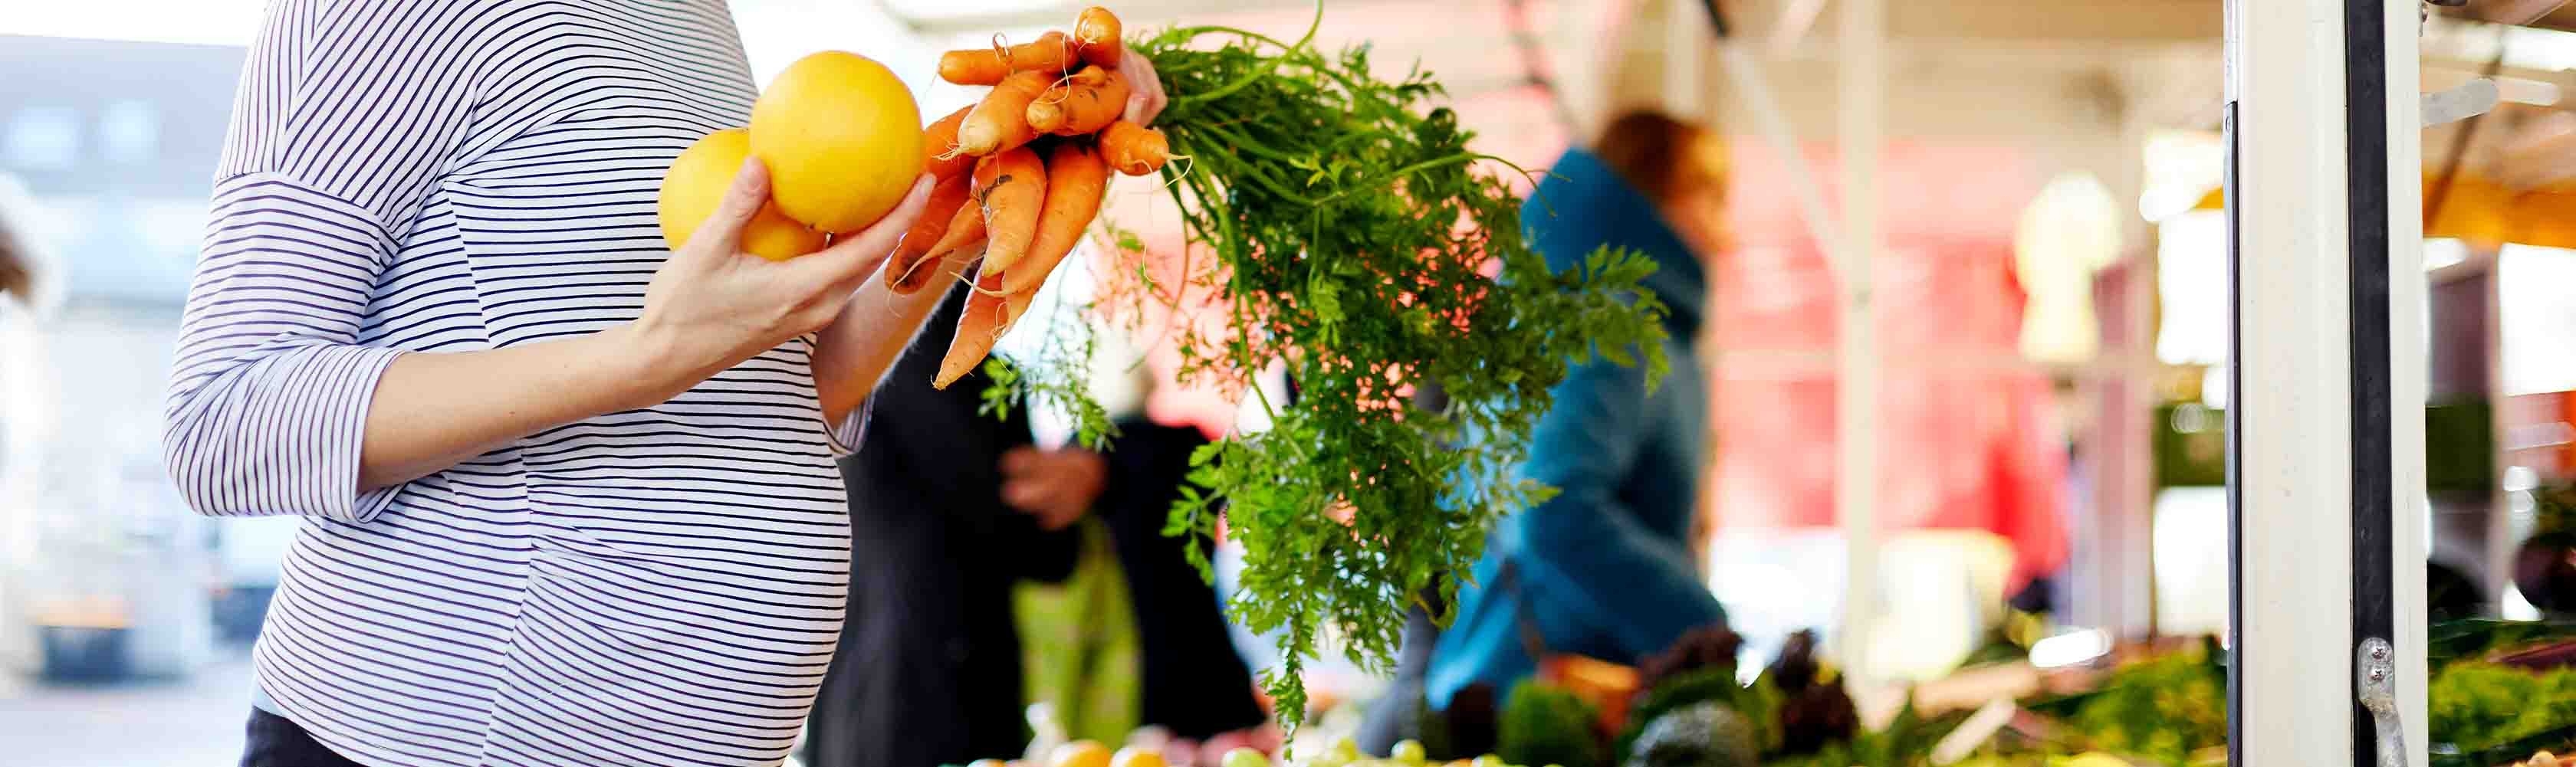 Schwanger werden und Ernährung – Schwangere Frau kauft am Markt frisches Obst und Gemüse.